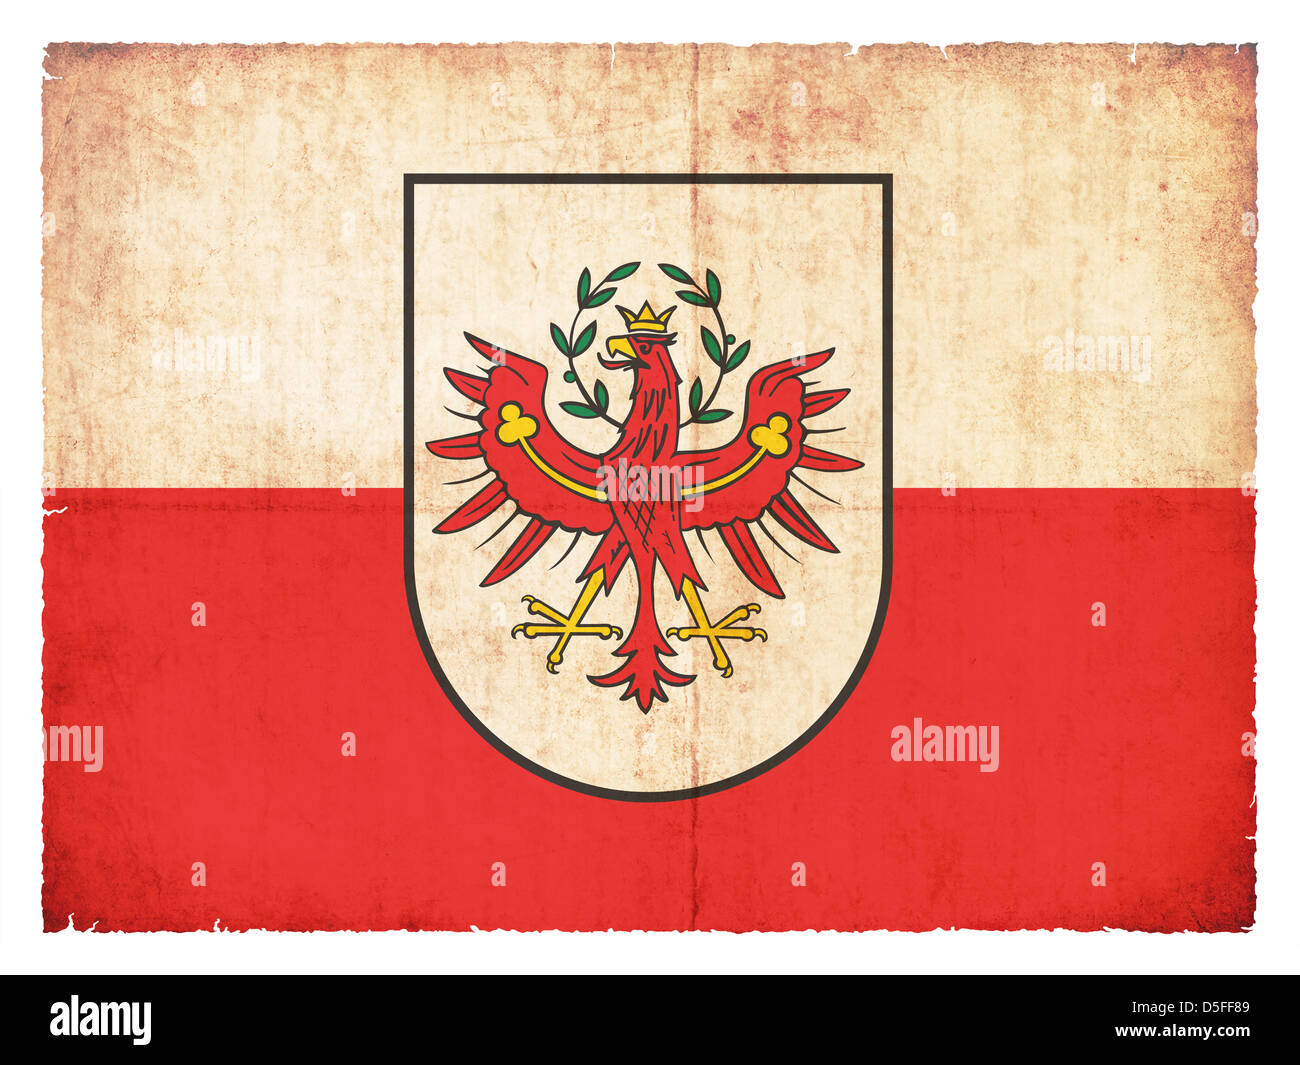 Bandiera della provincia austriaca Tirolo creato in stile grunge Foto Stock